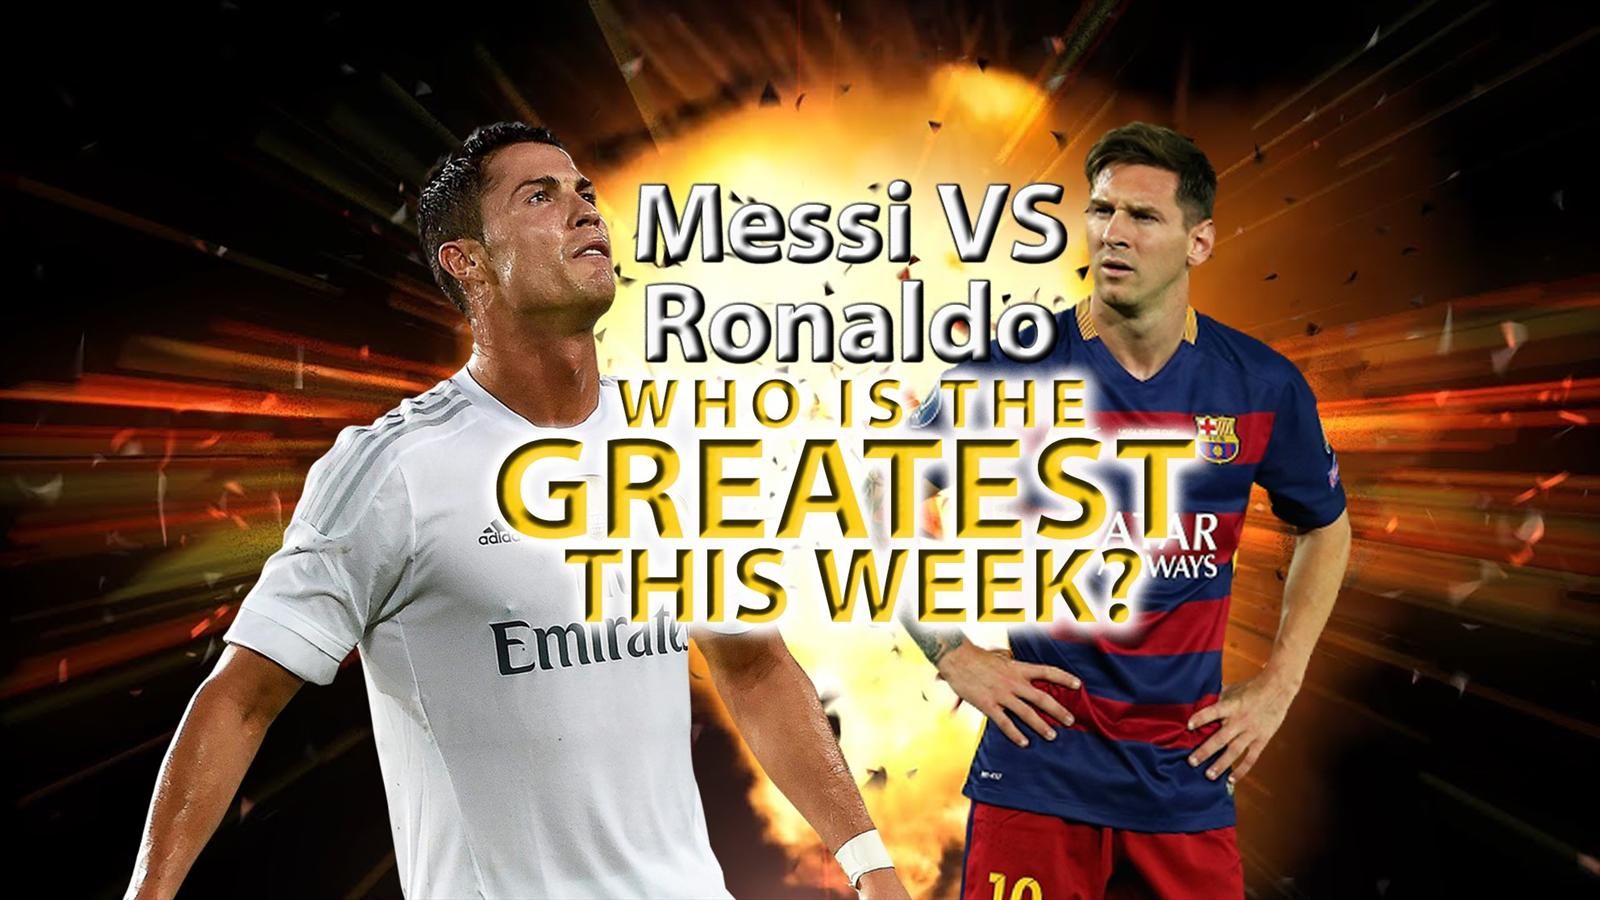 Cristiano Ronaldo Vs Messi Wallpaper 2015 - Football Ronaldo Vs Messi 2016 - HD Wallpaper 